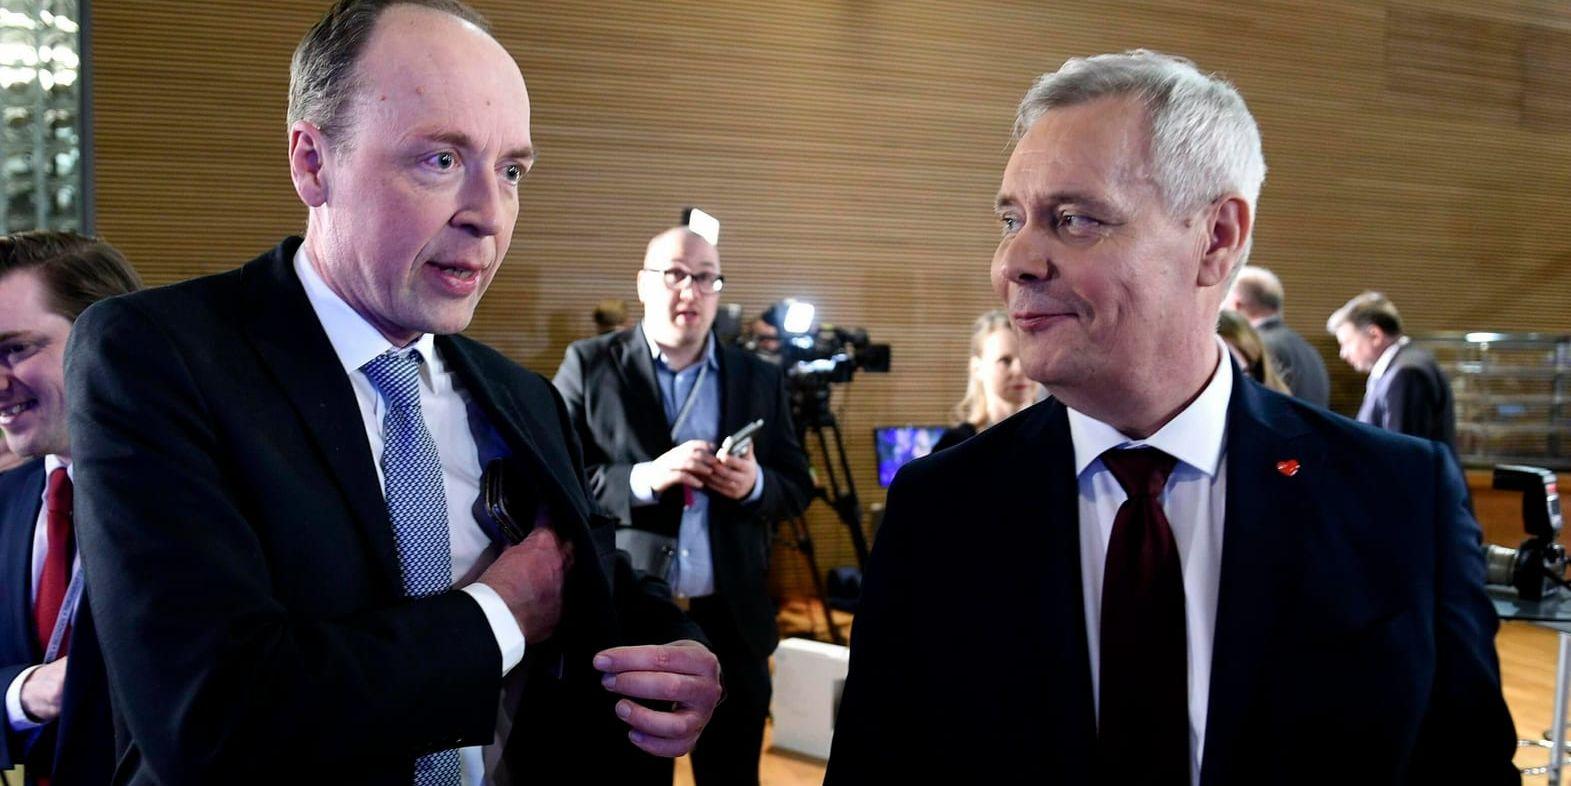 En allians mellan Jussi Halla-aho (t.v.) och Socialdemokraternas ledare Antti Rinne (t.h.) är osannolik, tror statsvetaren Göran Djupsund.